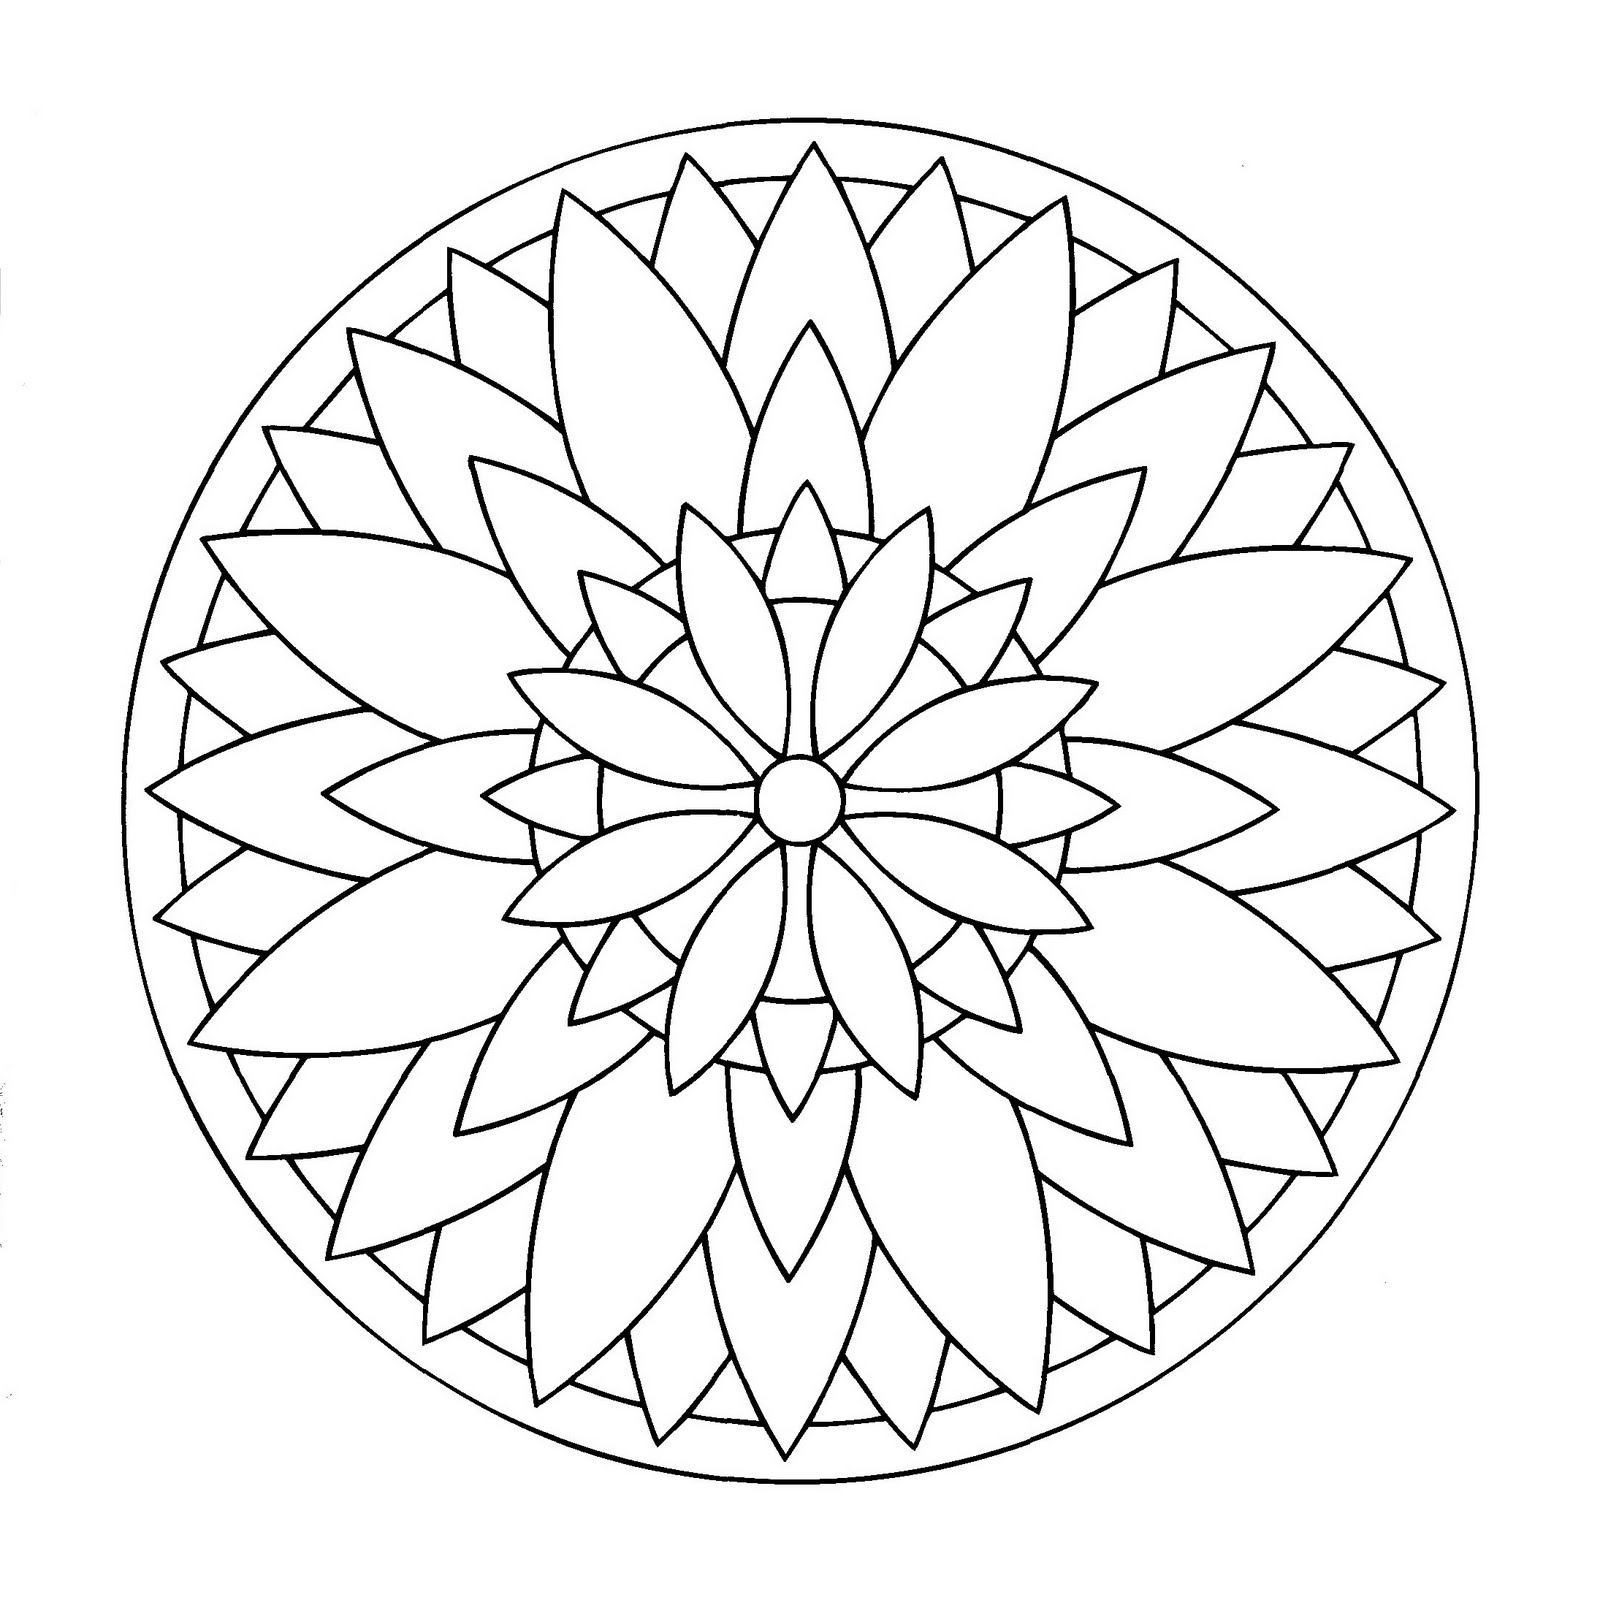 Dessin de mandala avec spirales représentant une grande fleur. Facile à colorier.